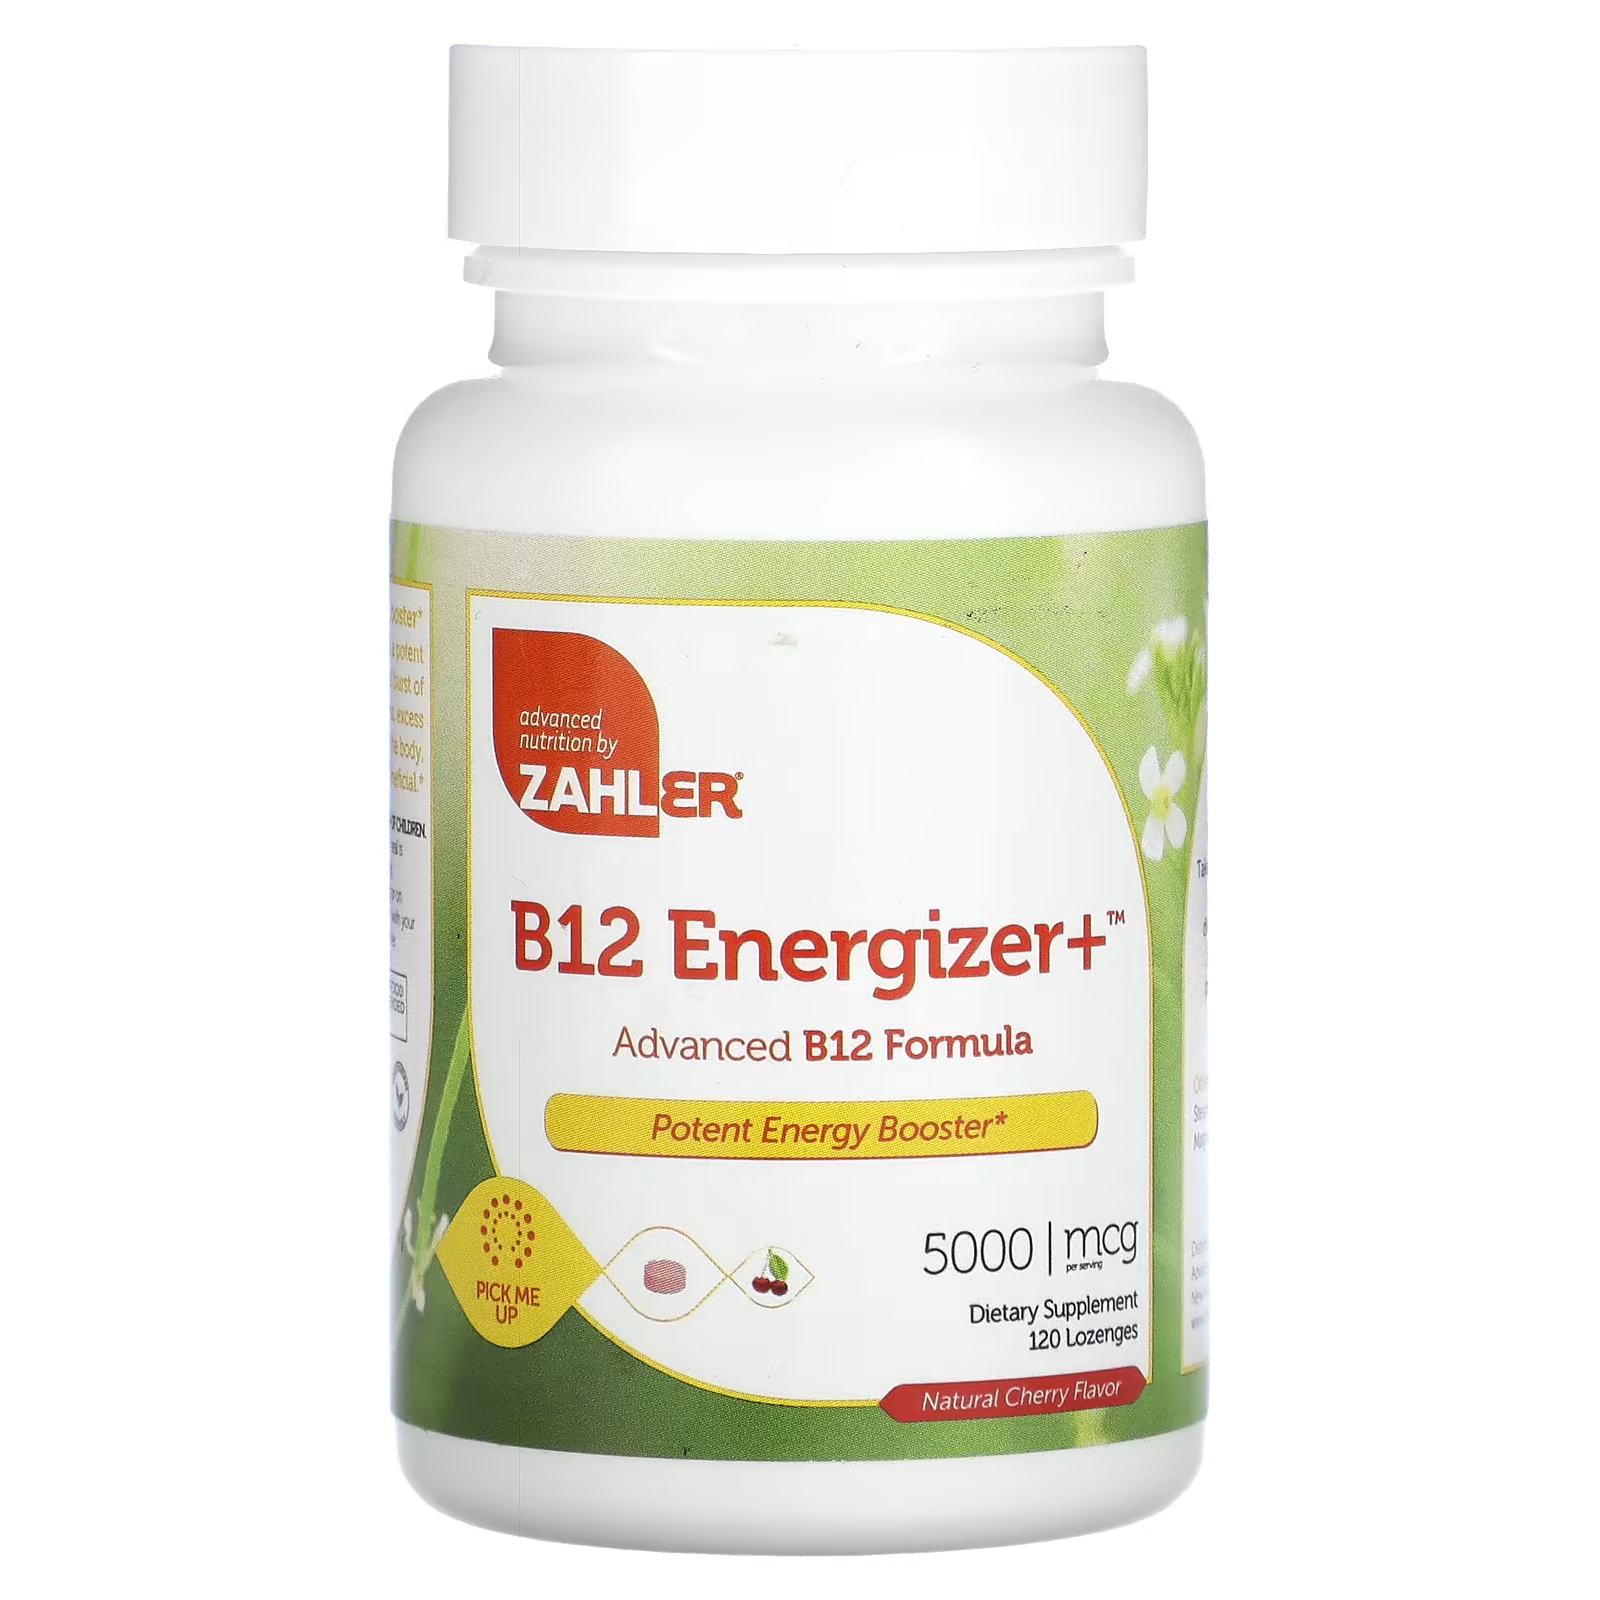 Биологически активная добавка Zahler B12 Energizer+ усовершенствованная формула B12, натуральная вишня, 5000 мкг., 120 таблеток пищевая добавка zahler b12 energizer b12 и формула фолиевой кислоты с натуральной вишней 360 пастилок